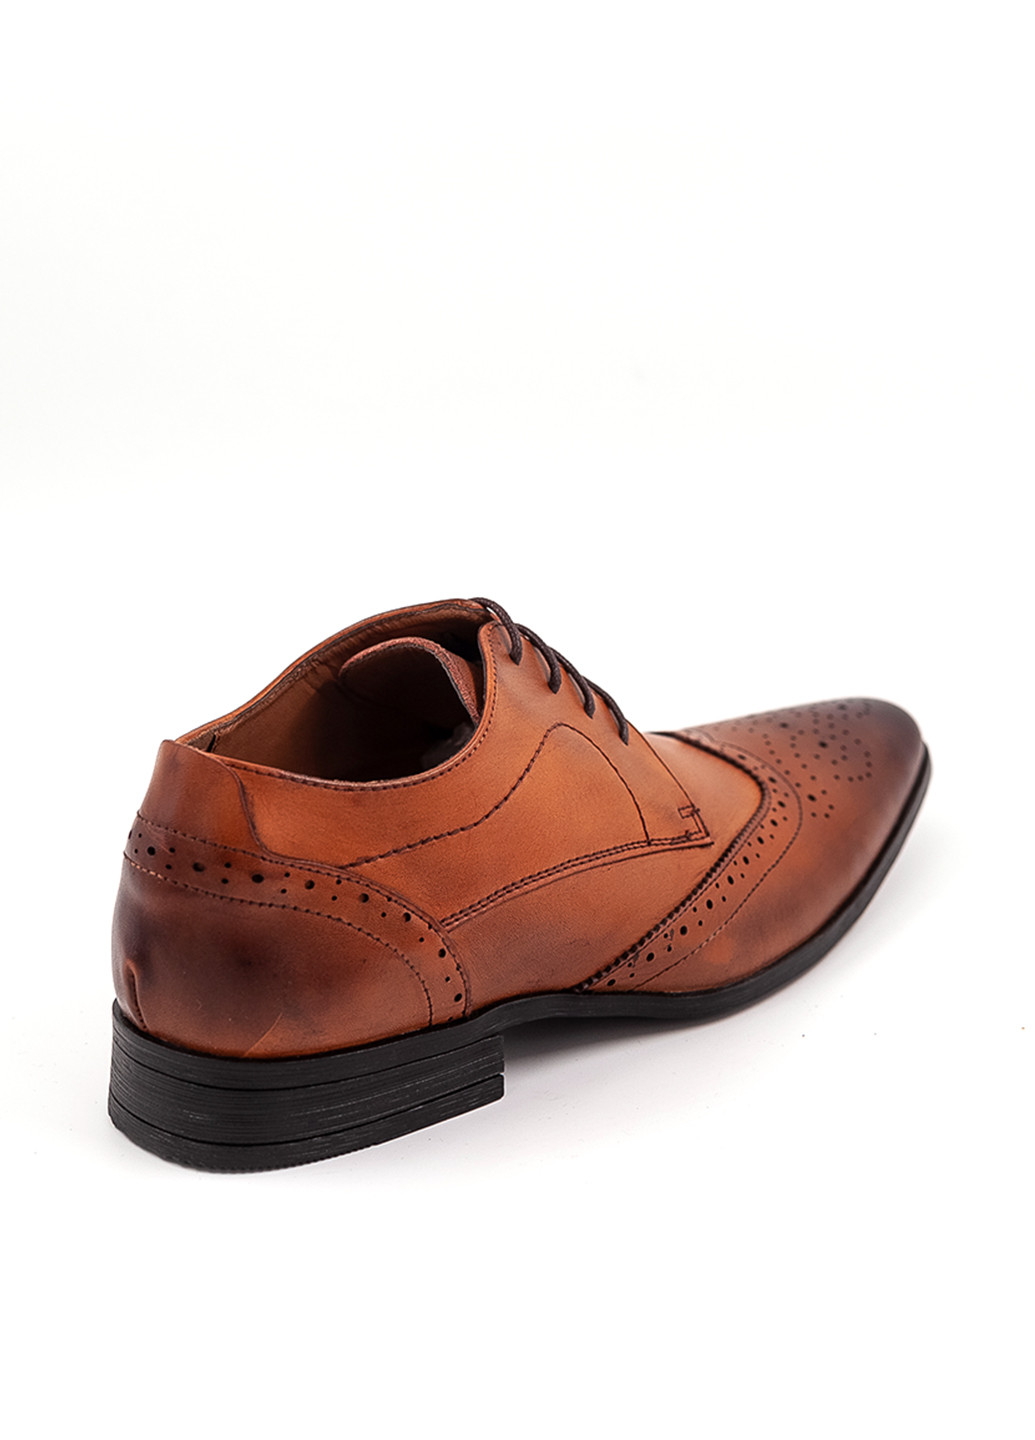 Коричневые классические туфли Finstone на шнурках